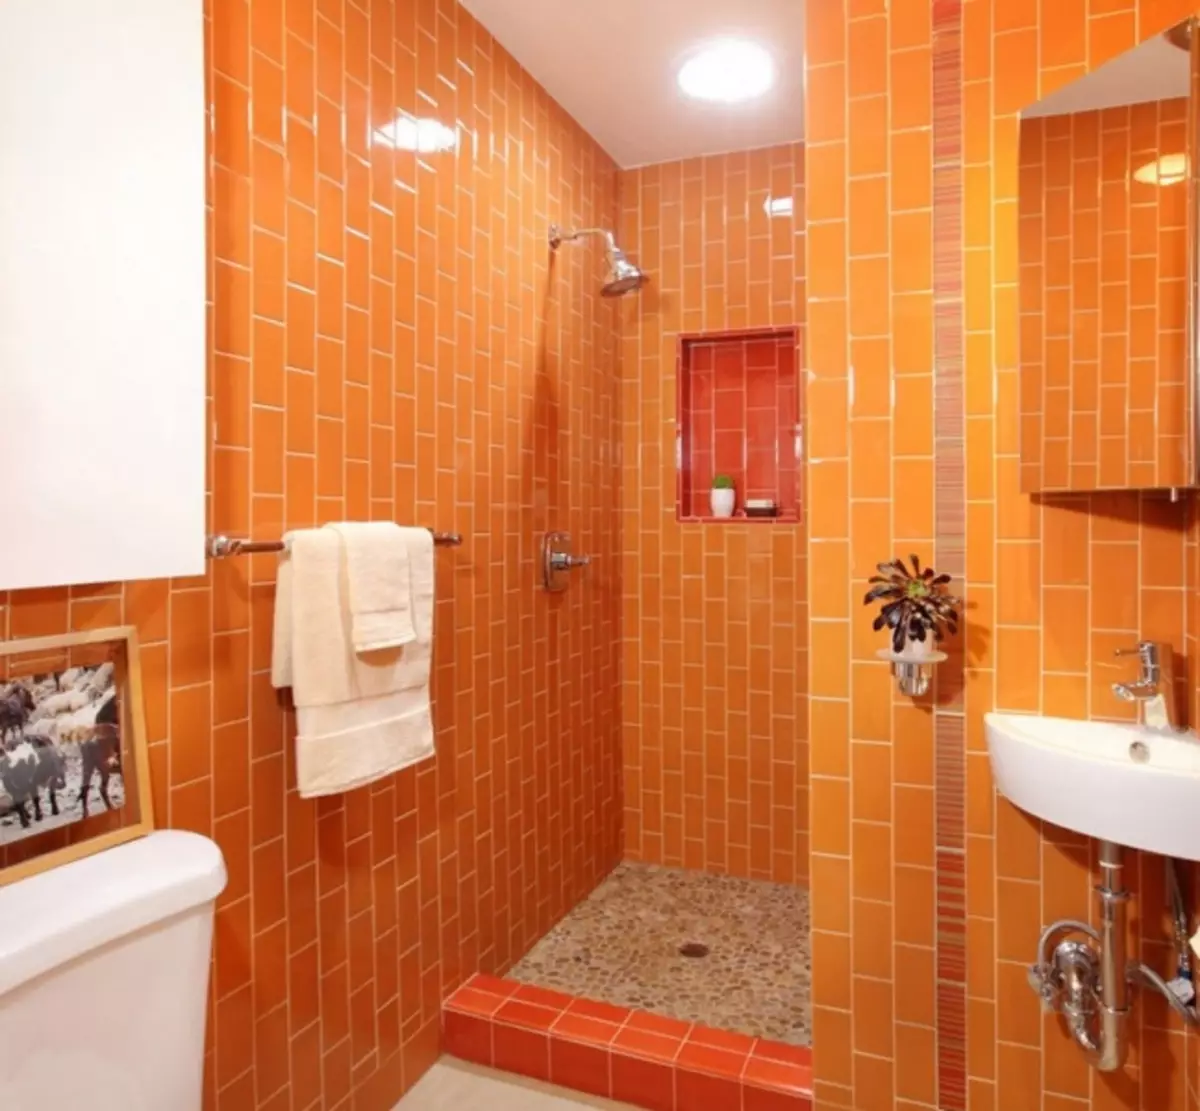 욕실 2 평방 미터. m. - 성공적인 디자인의 작은 비밀